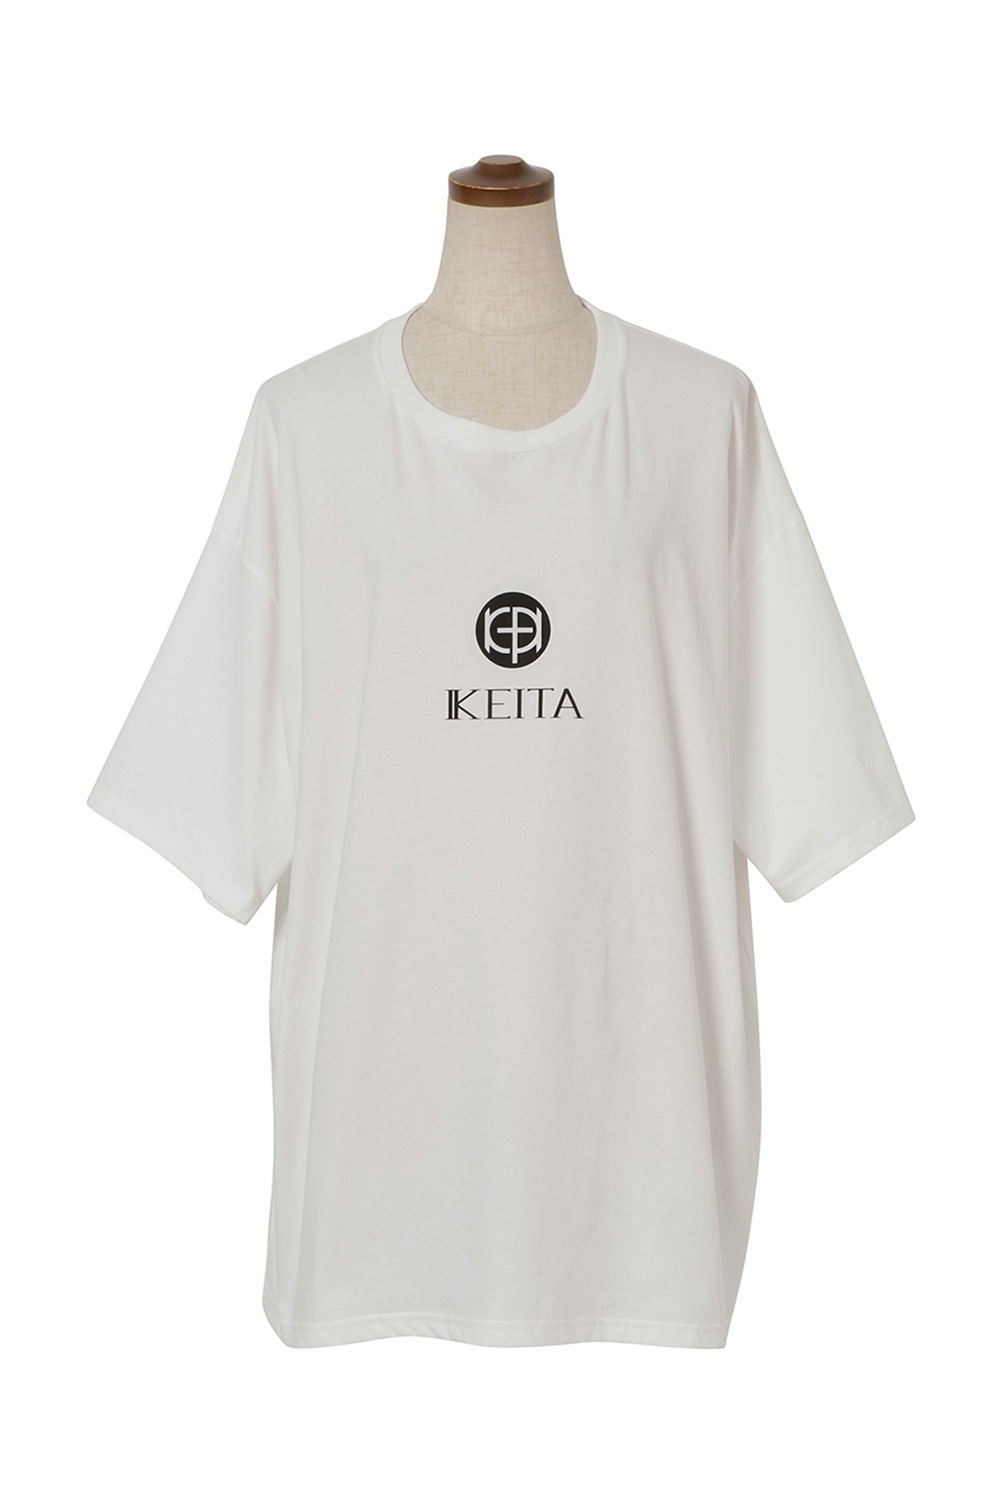 Keita Logo Tee 詳細画像 ホワイト